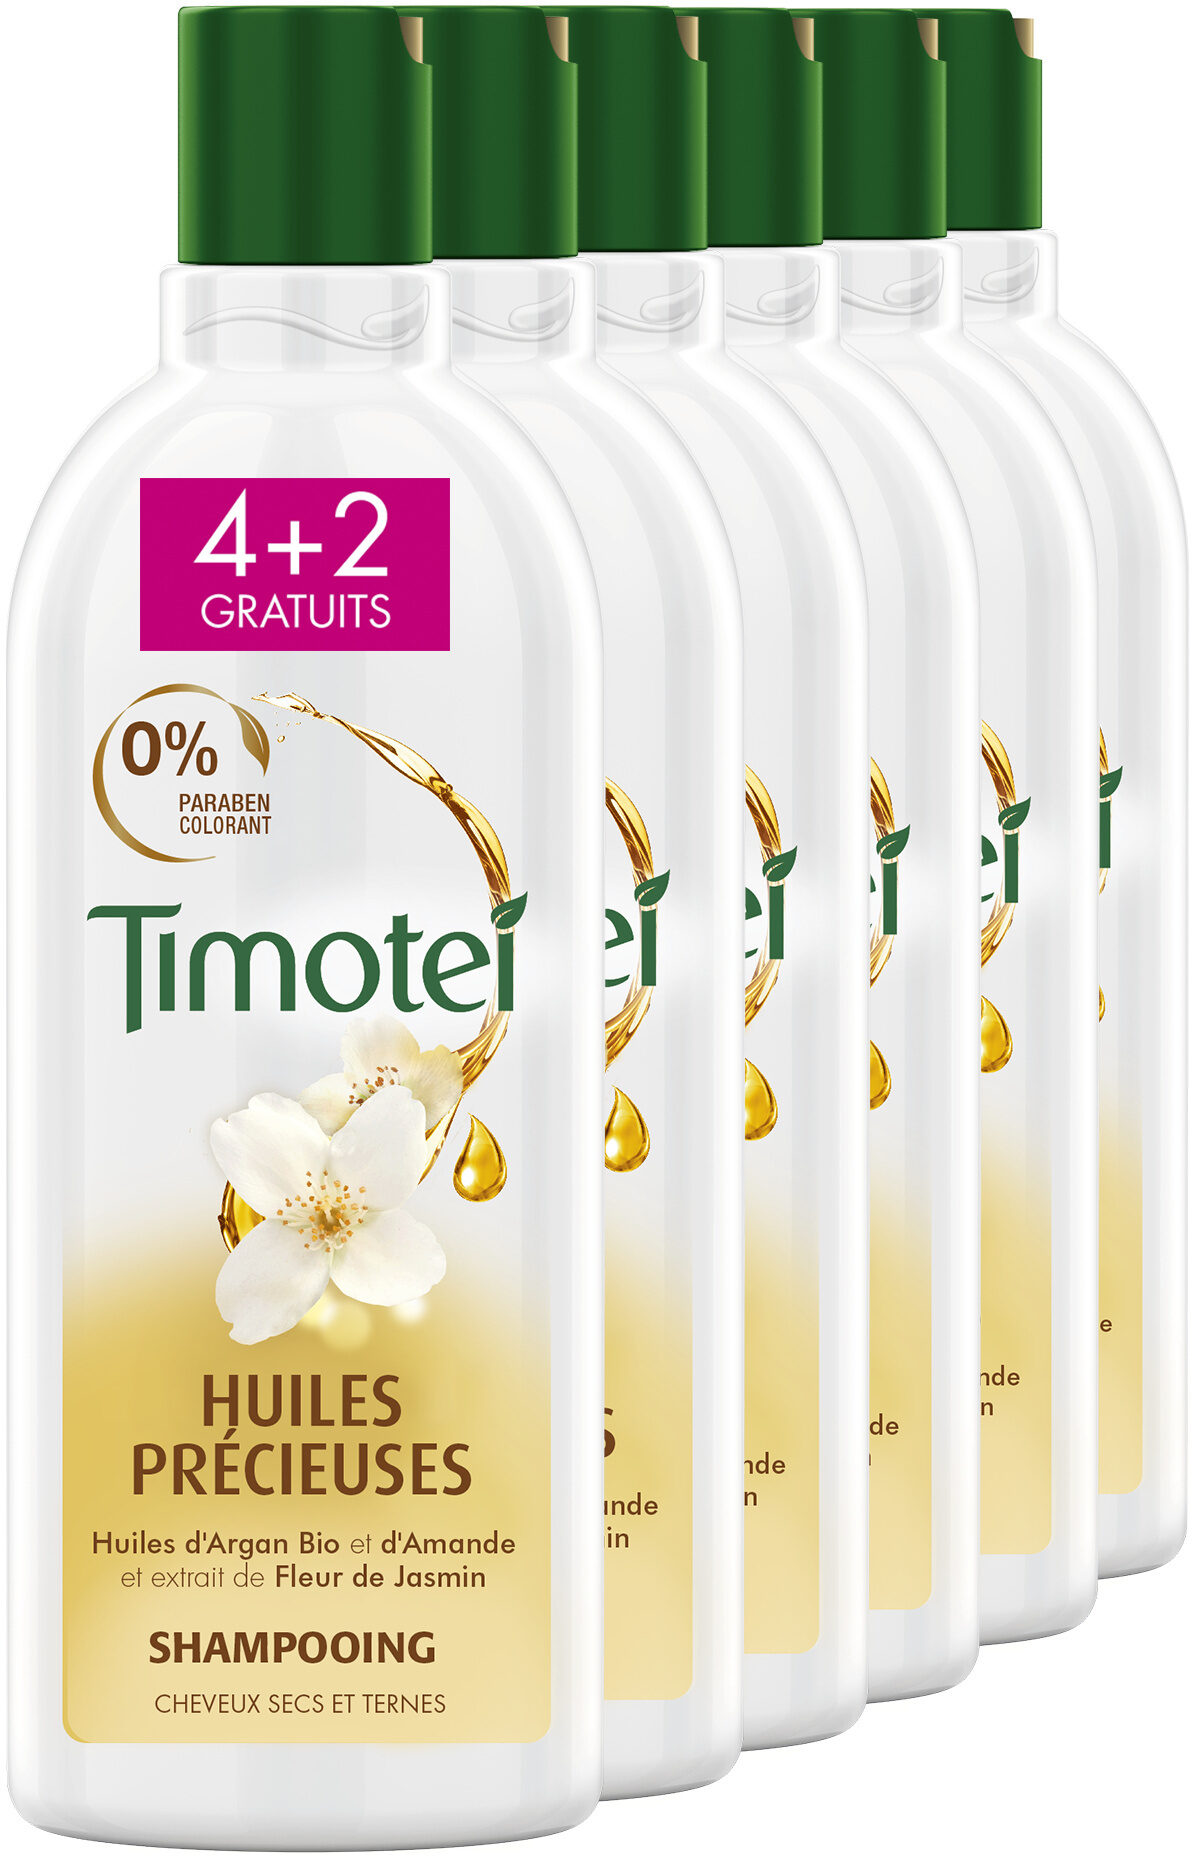 Timotei Shampoing Huiles Précieuses 300ml Lot de 6(4+2 Offerts) - Produit - fr